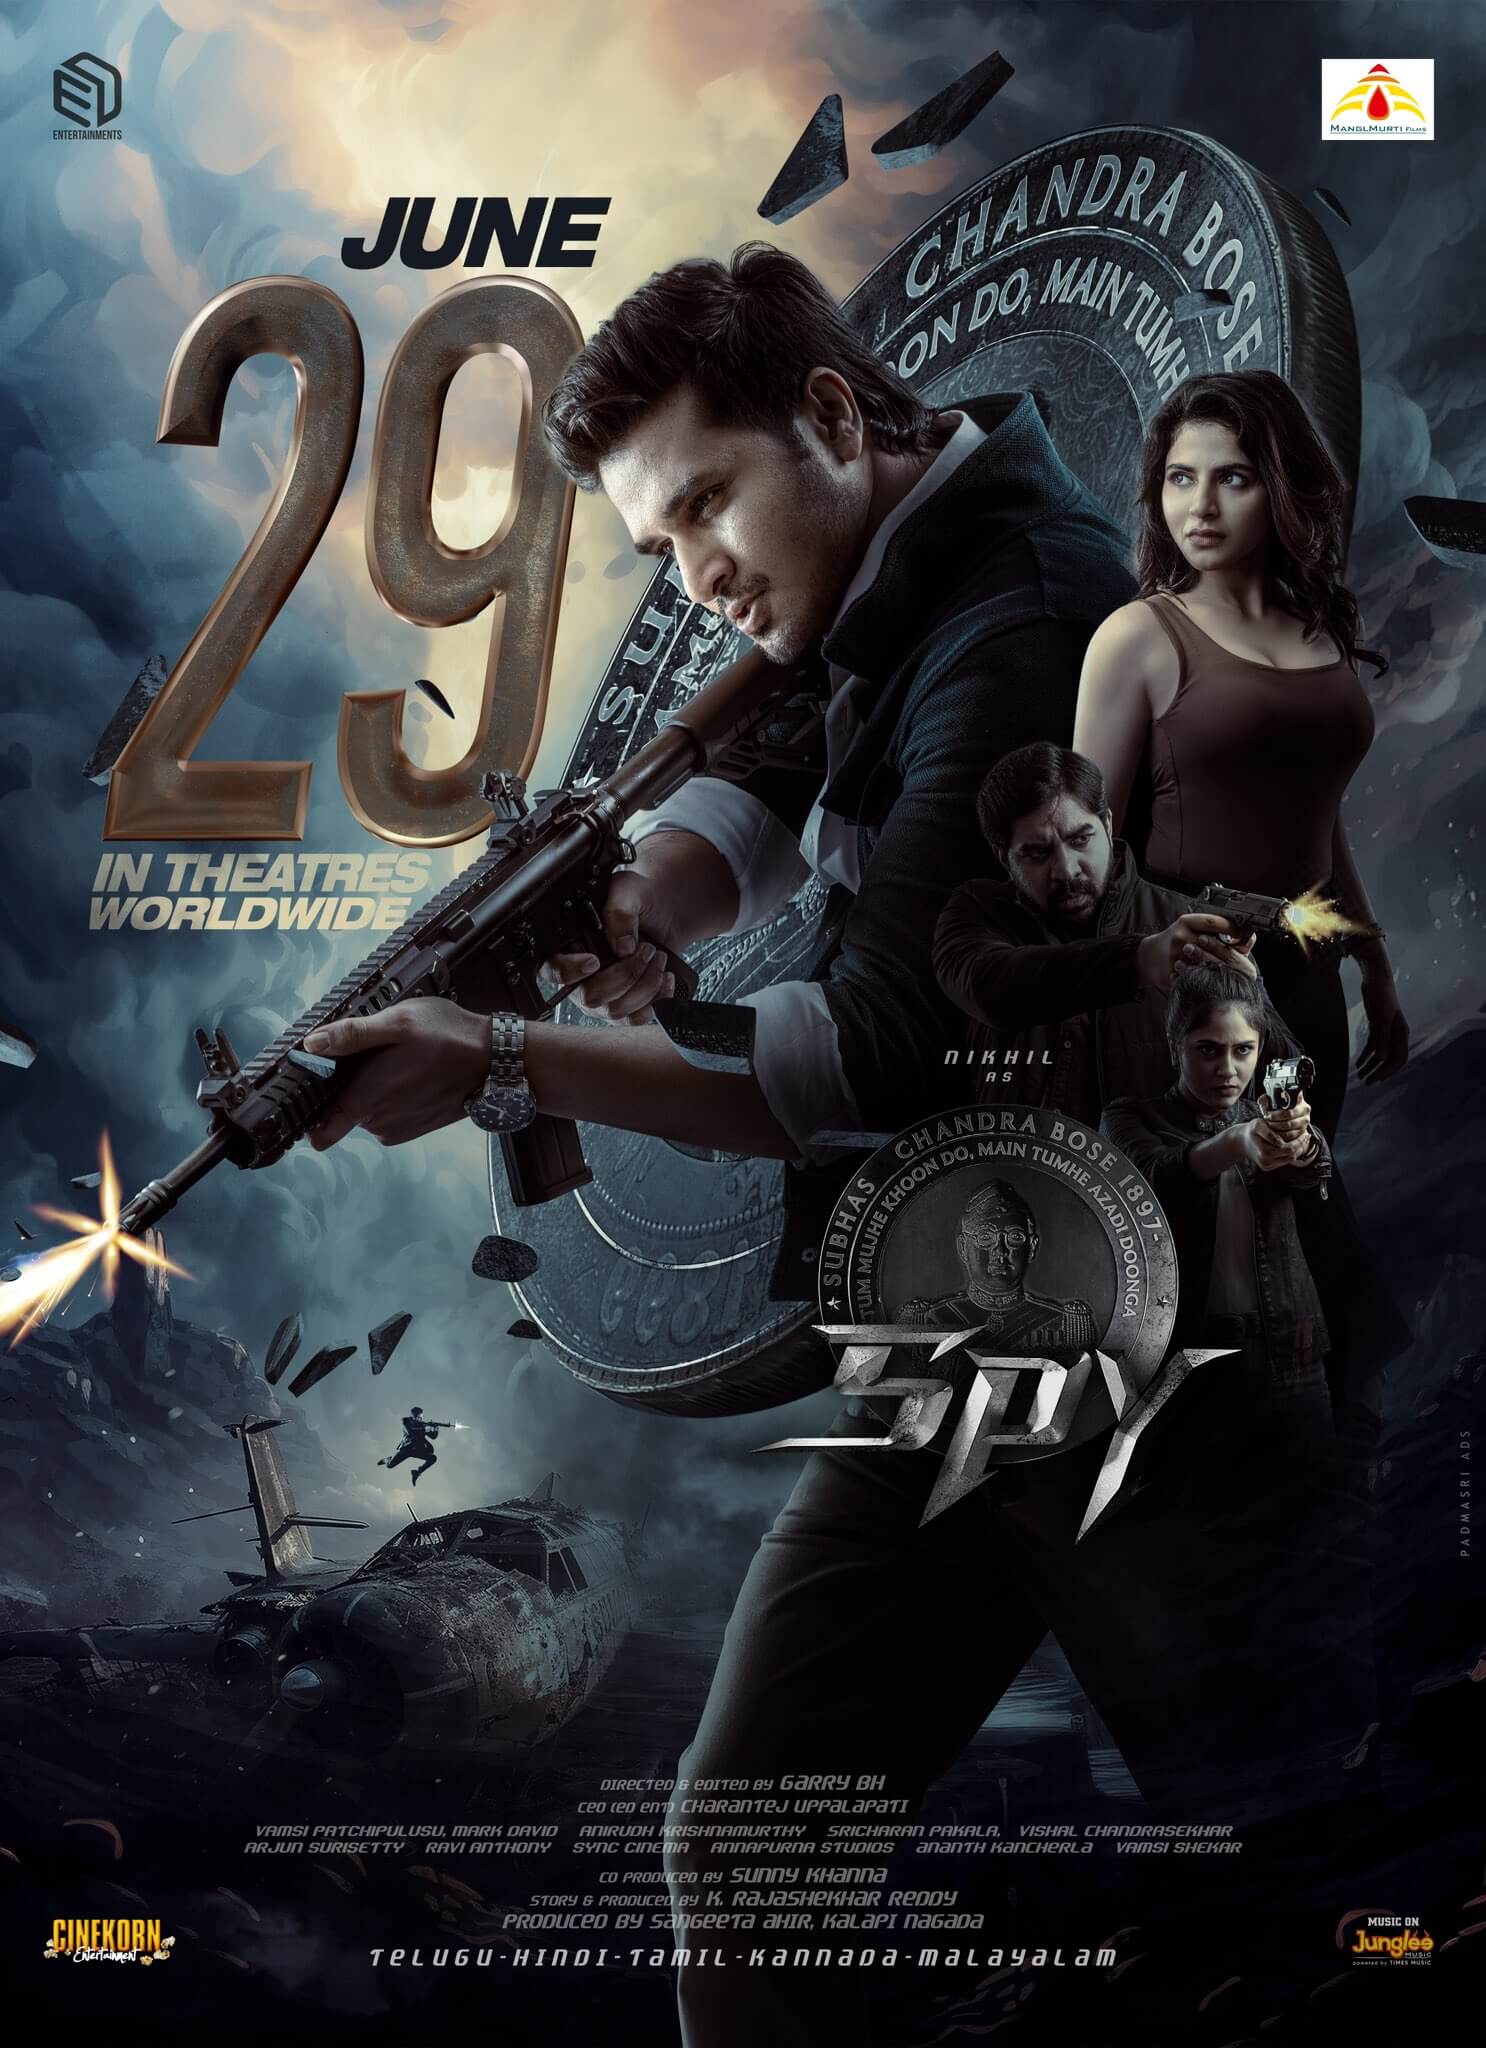 Spy Movie Poster